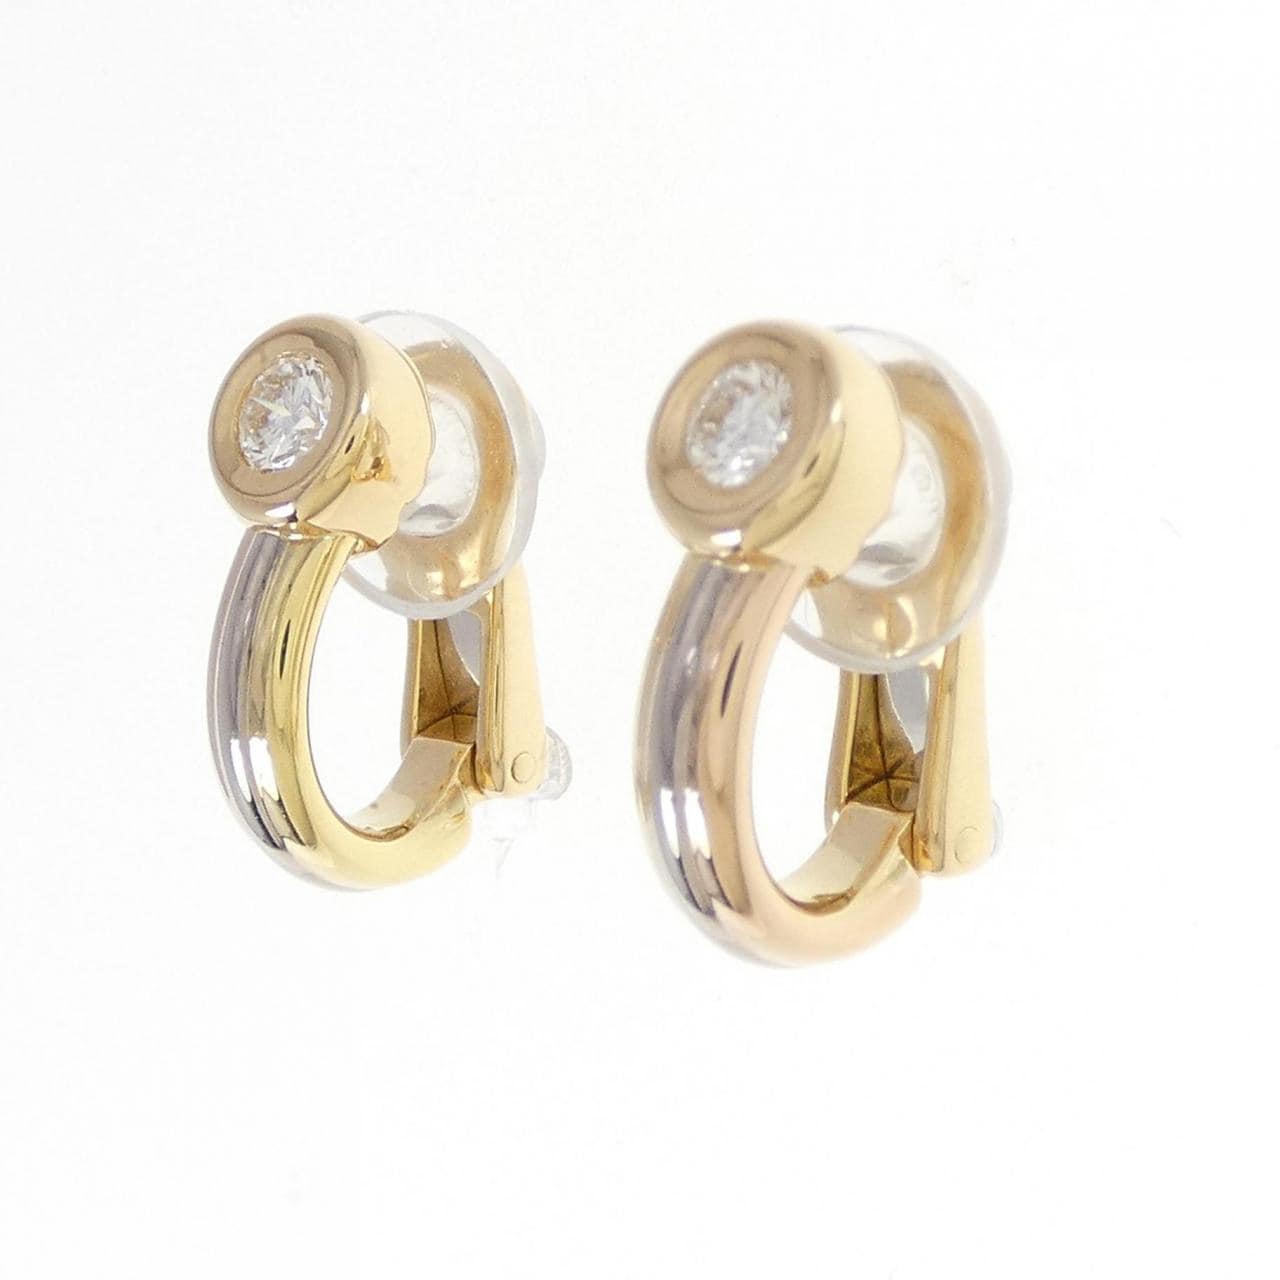 Cartier monostone earrings